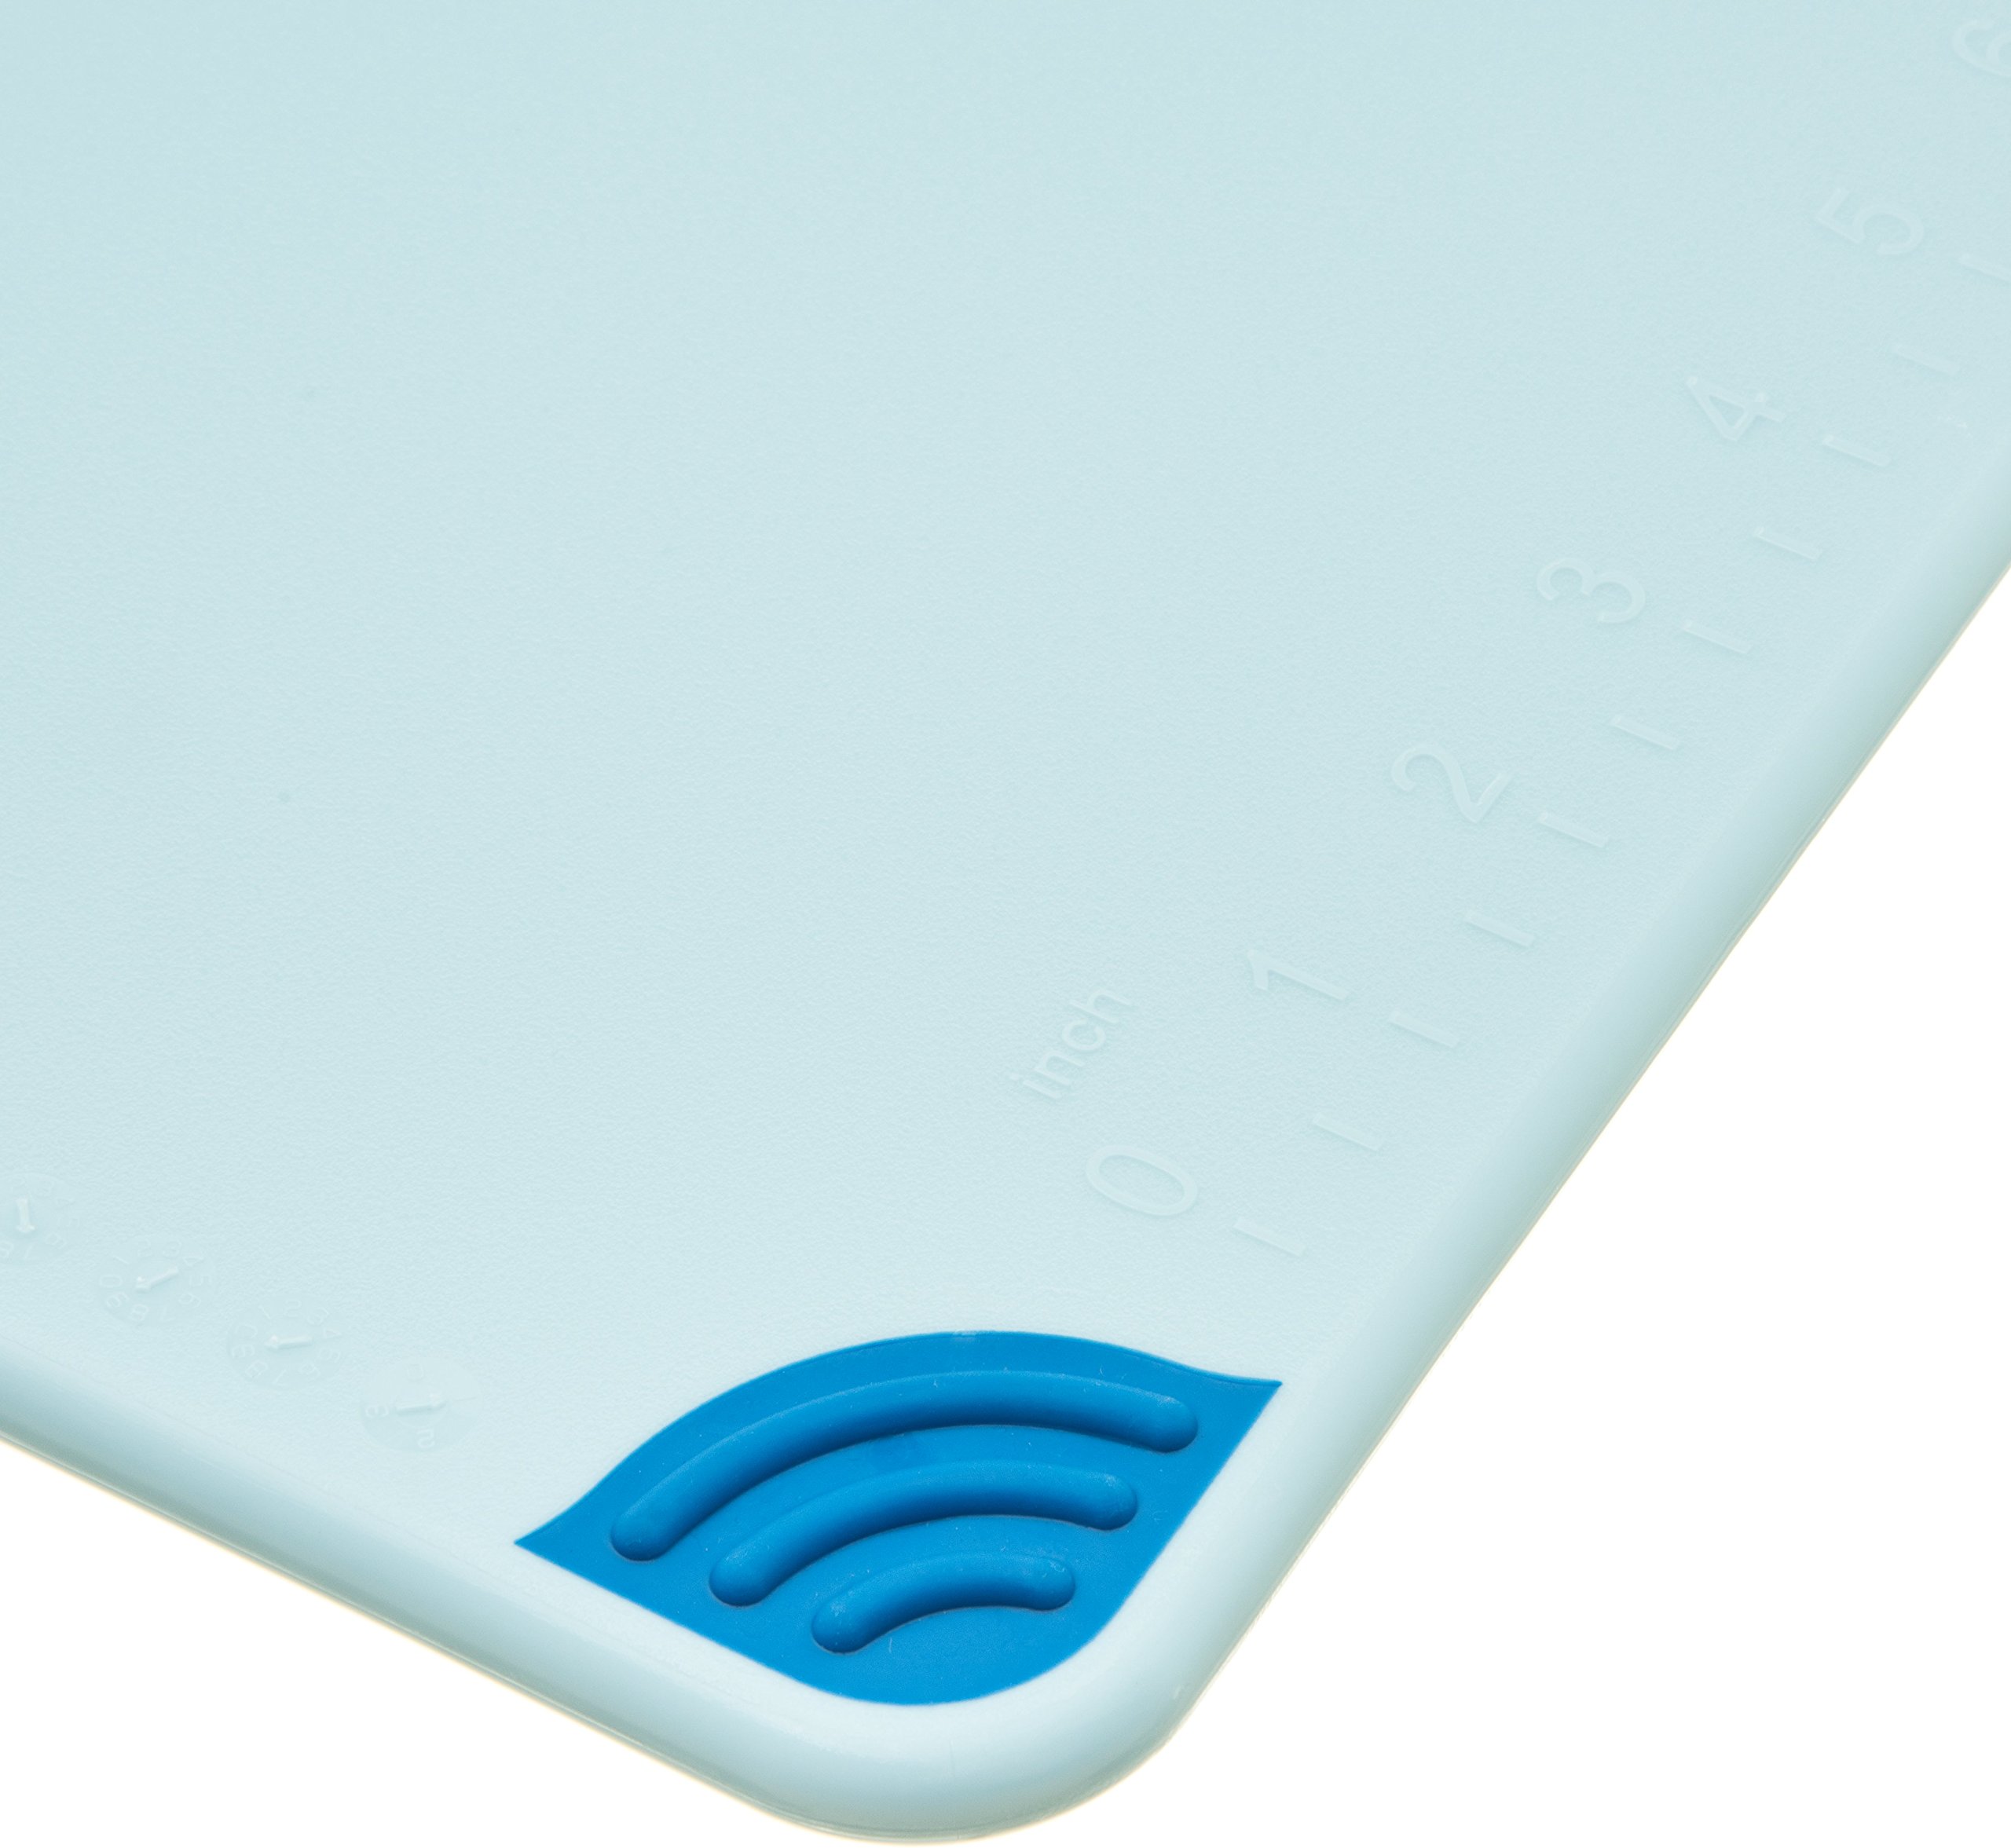 San Jamar Saf-T-Grip Plastic Cutting Board with Safety Hook, 12" x 18" x 0.5", Blue